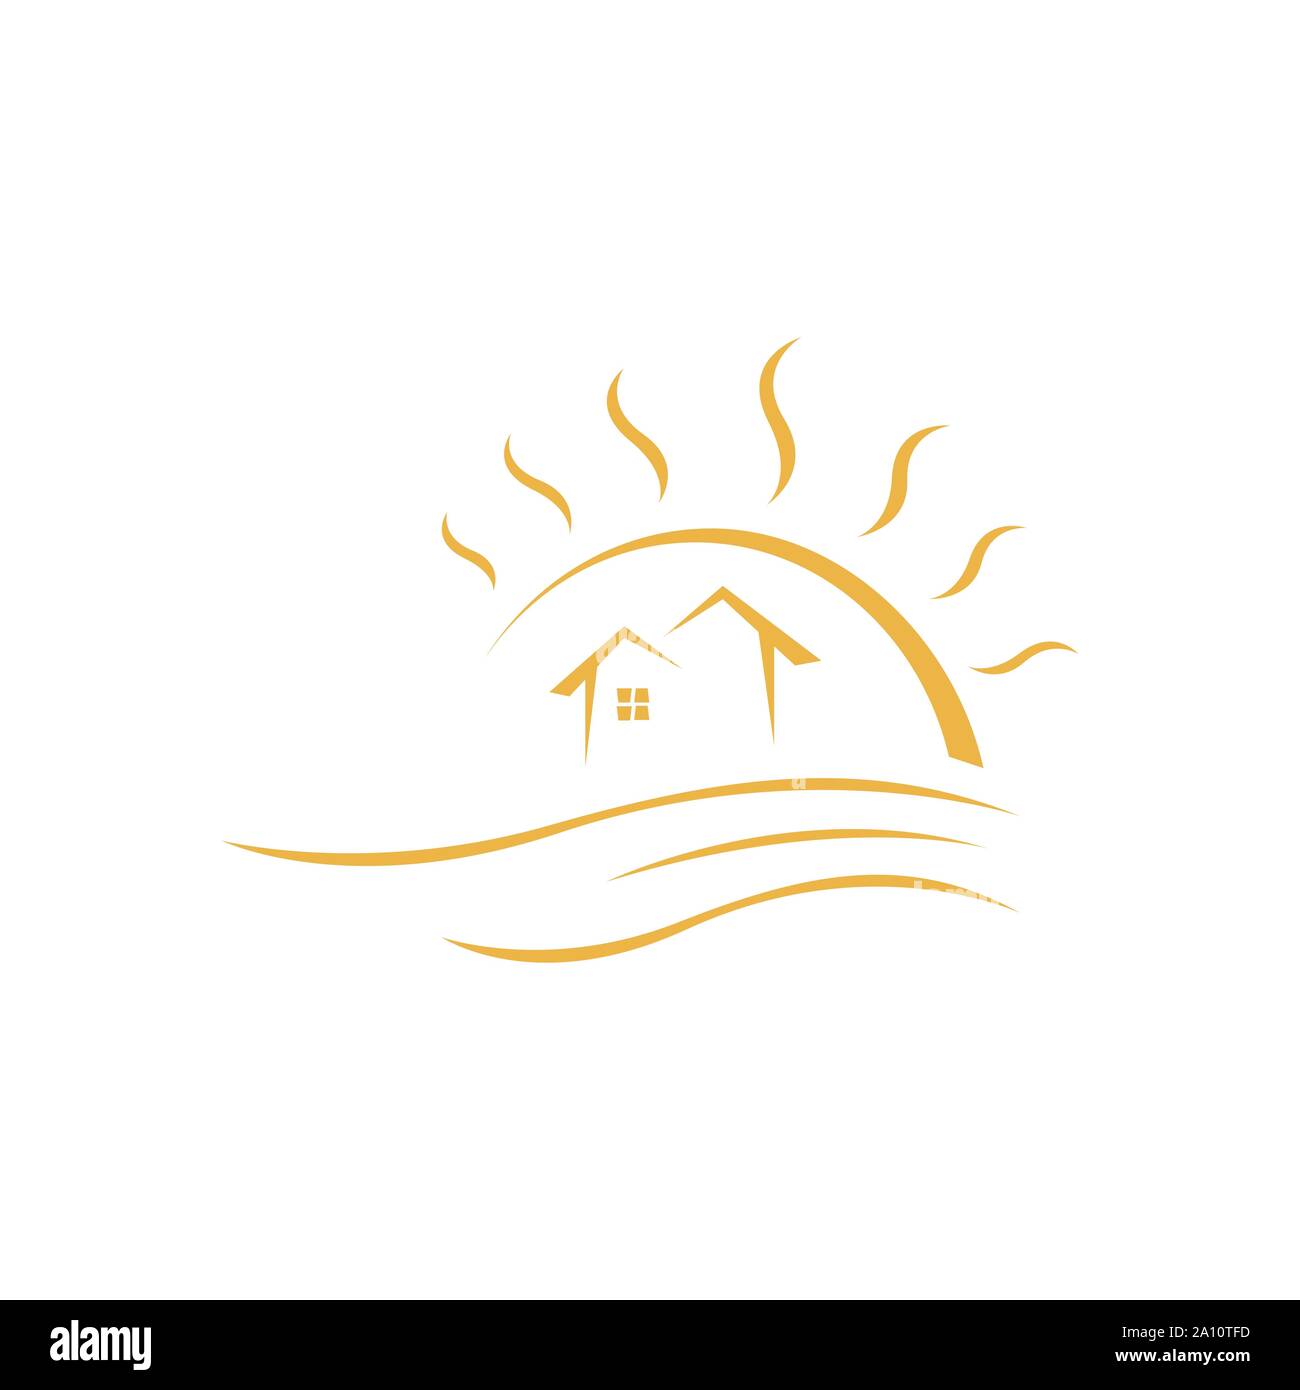 tropical summer beach house logo design template Vector illustration Stock Vector